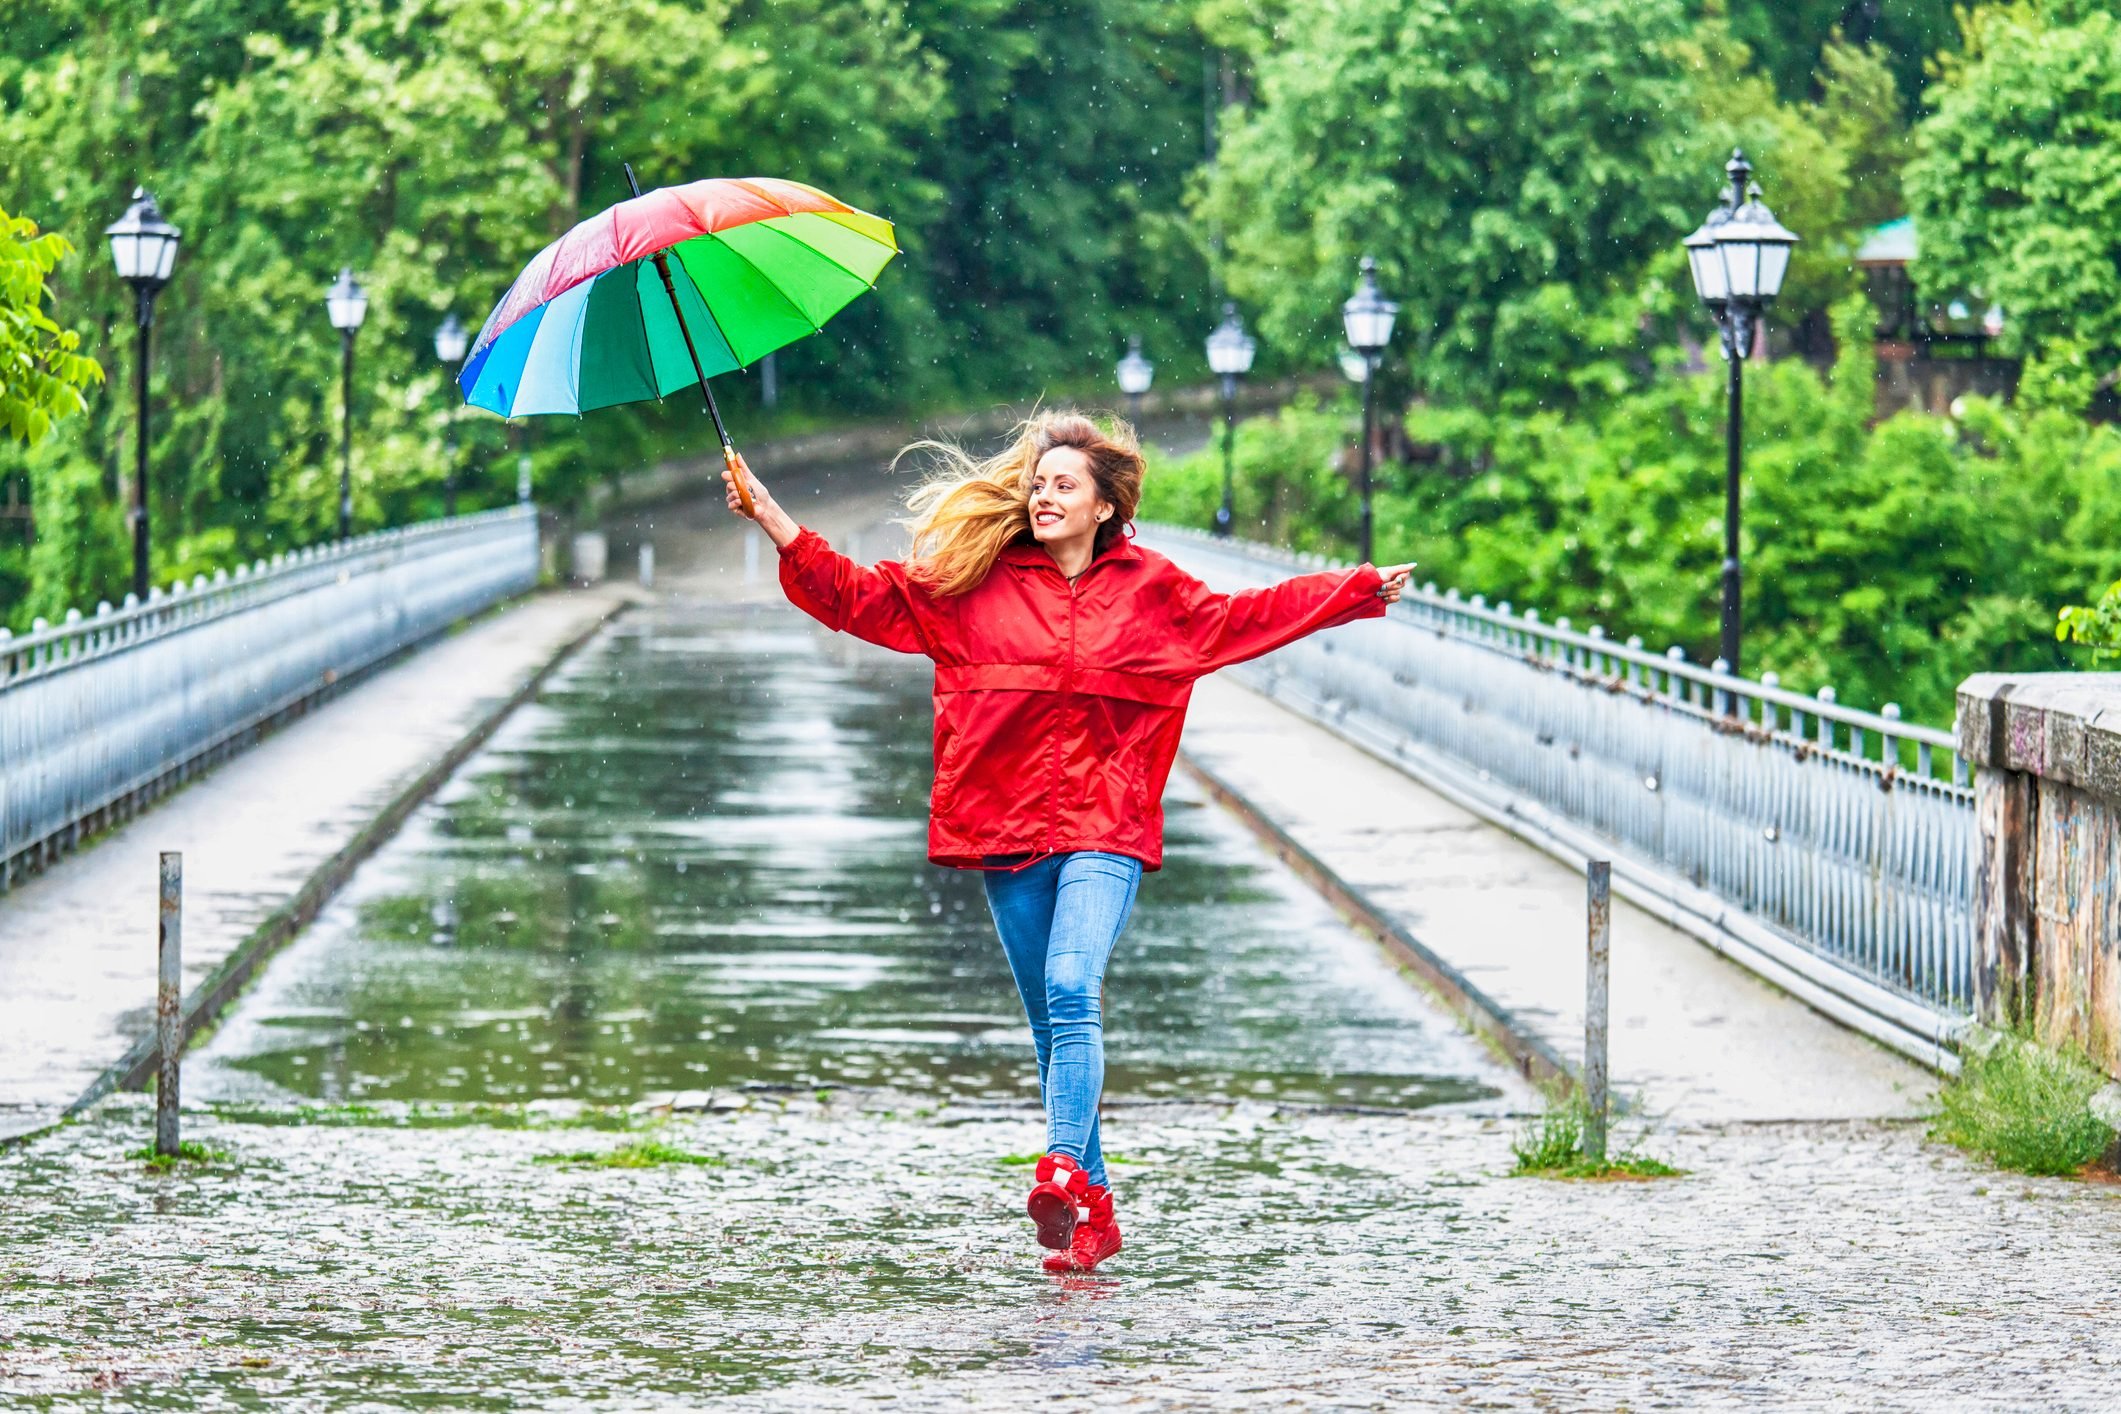 Beautiful girl with umbrella dancing in the rain|